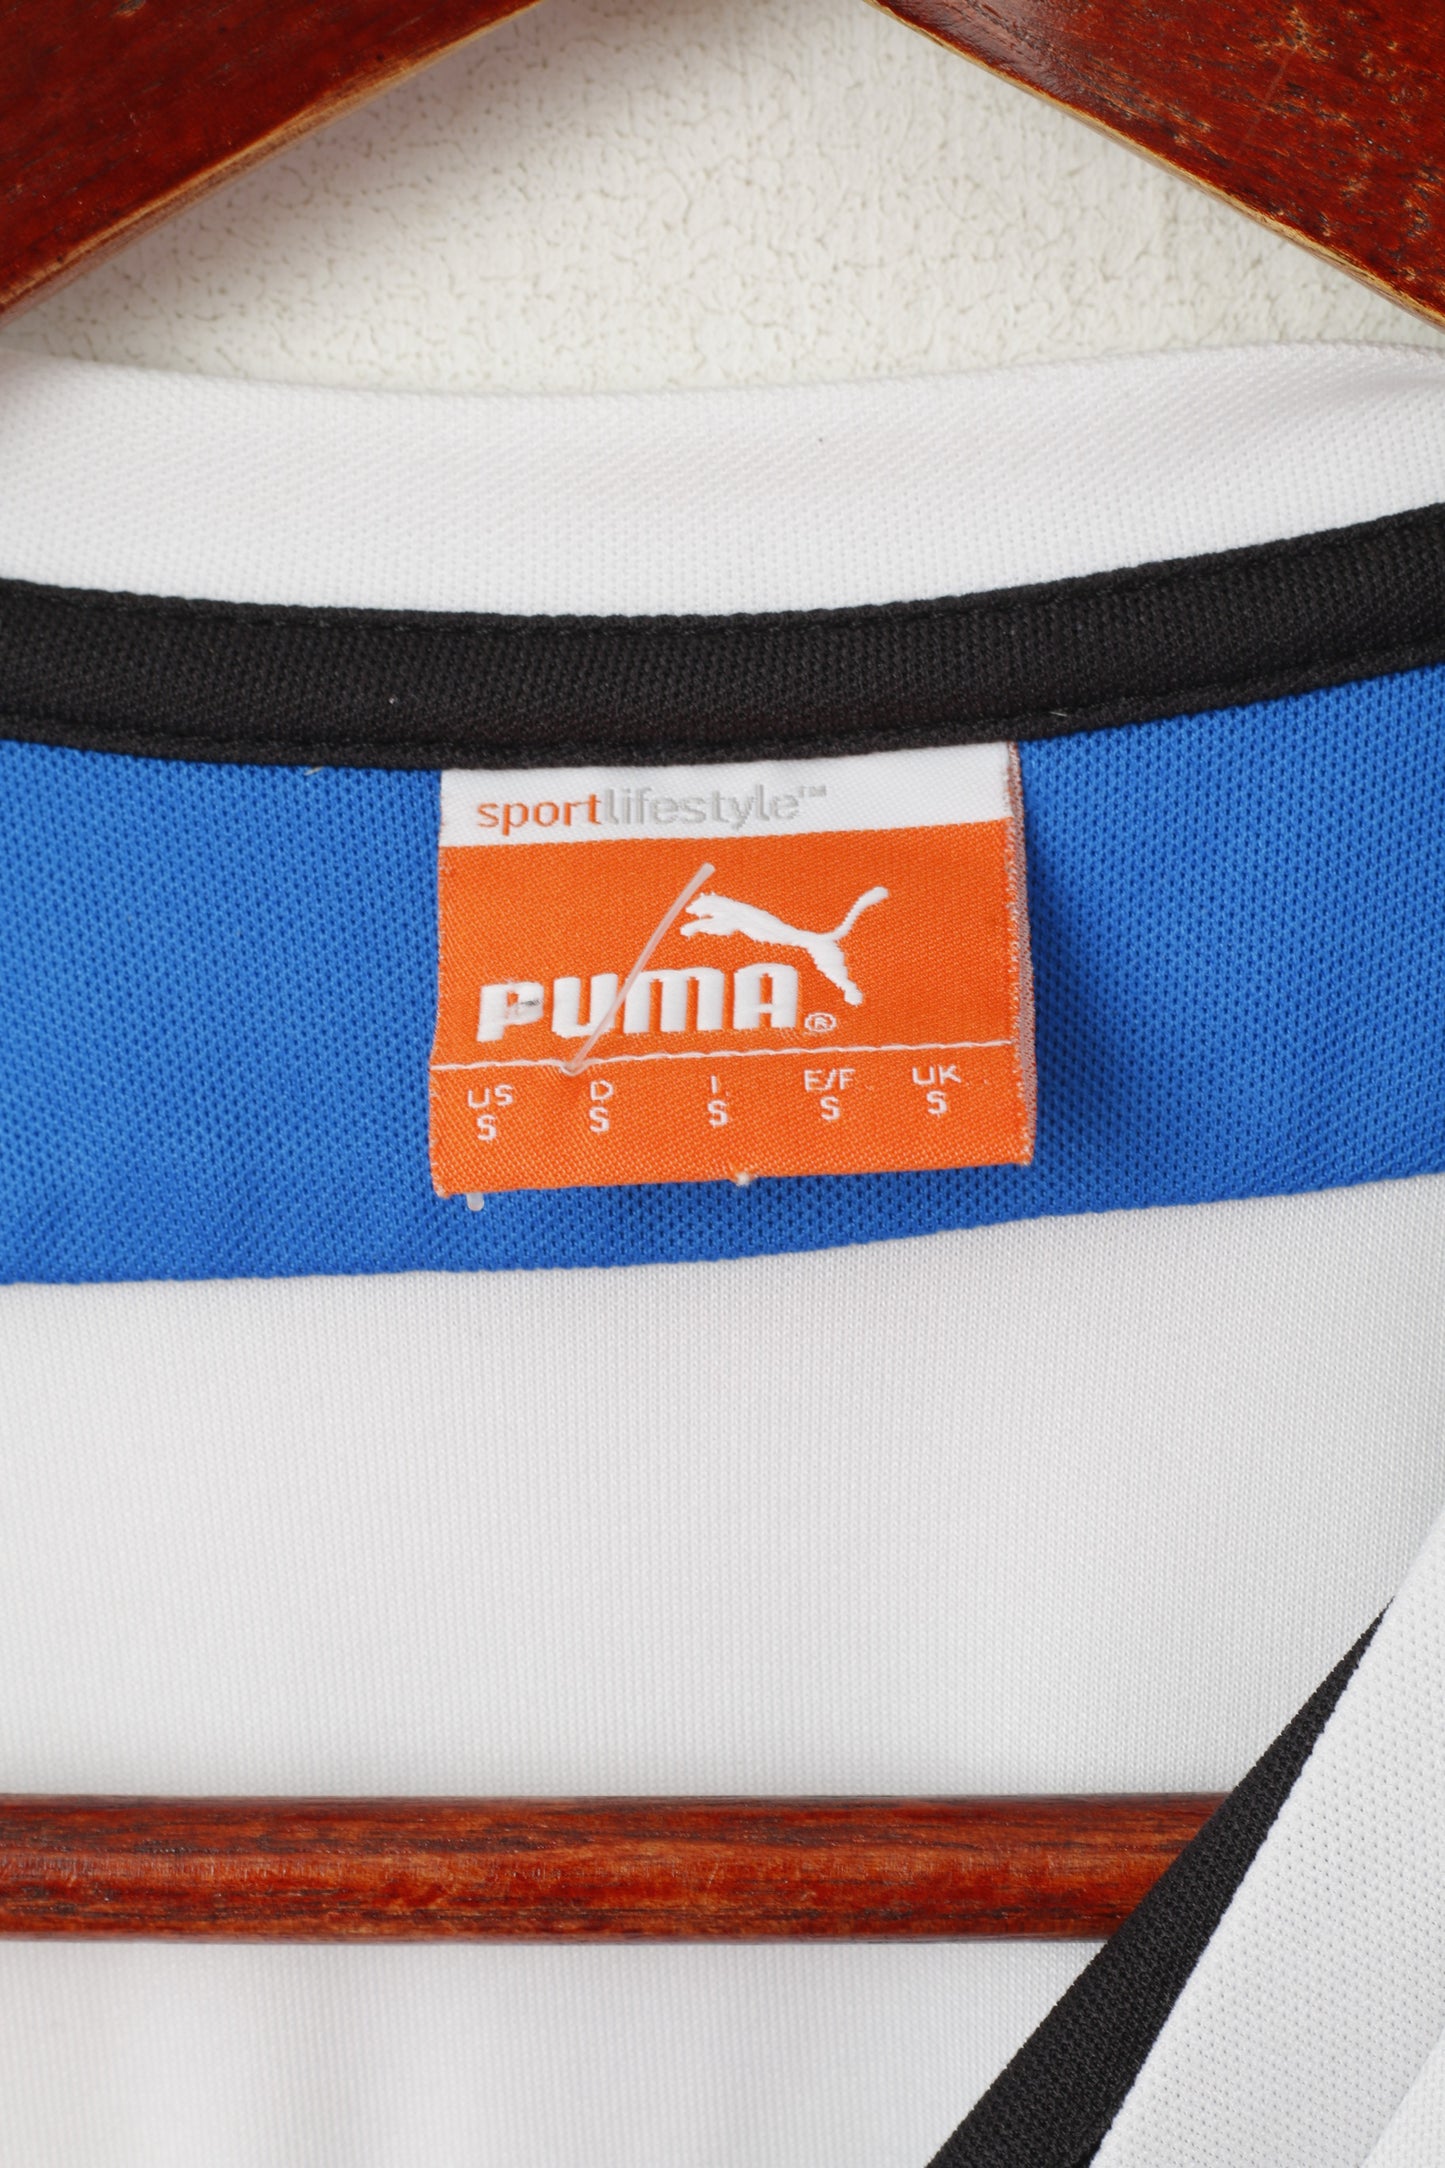 Maglia Puma Newcastle United da uomo, colore bianco, maglia sportiva del club di calcio